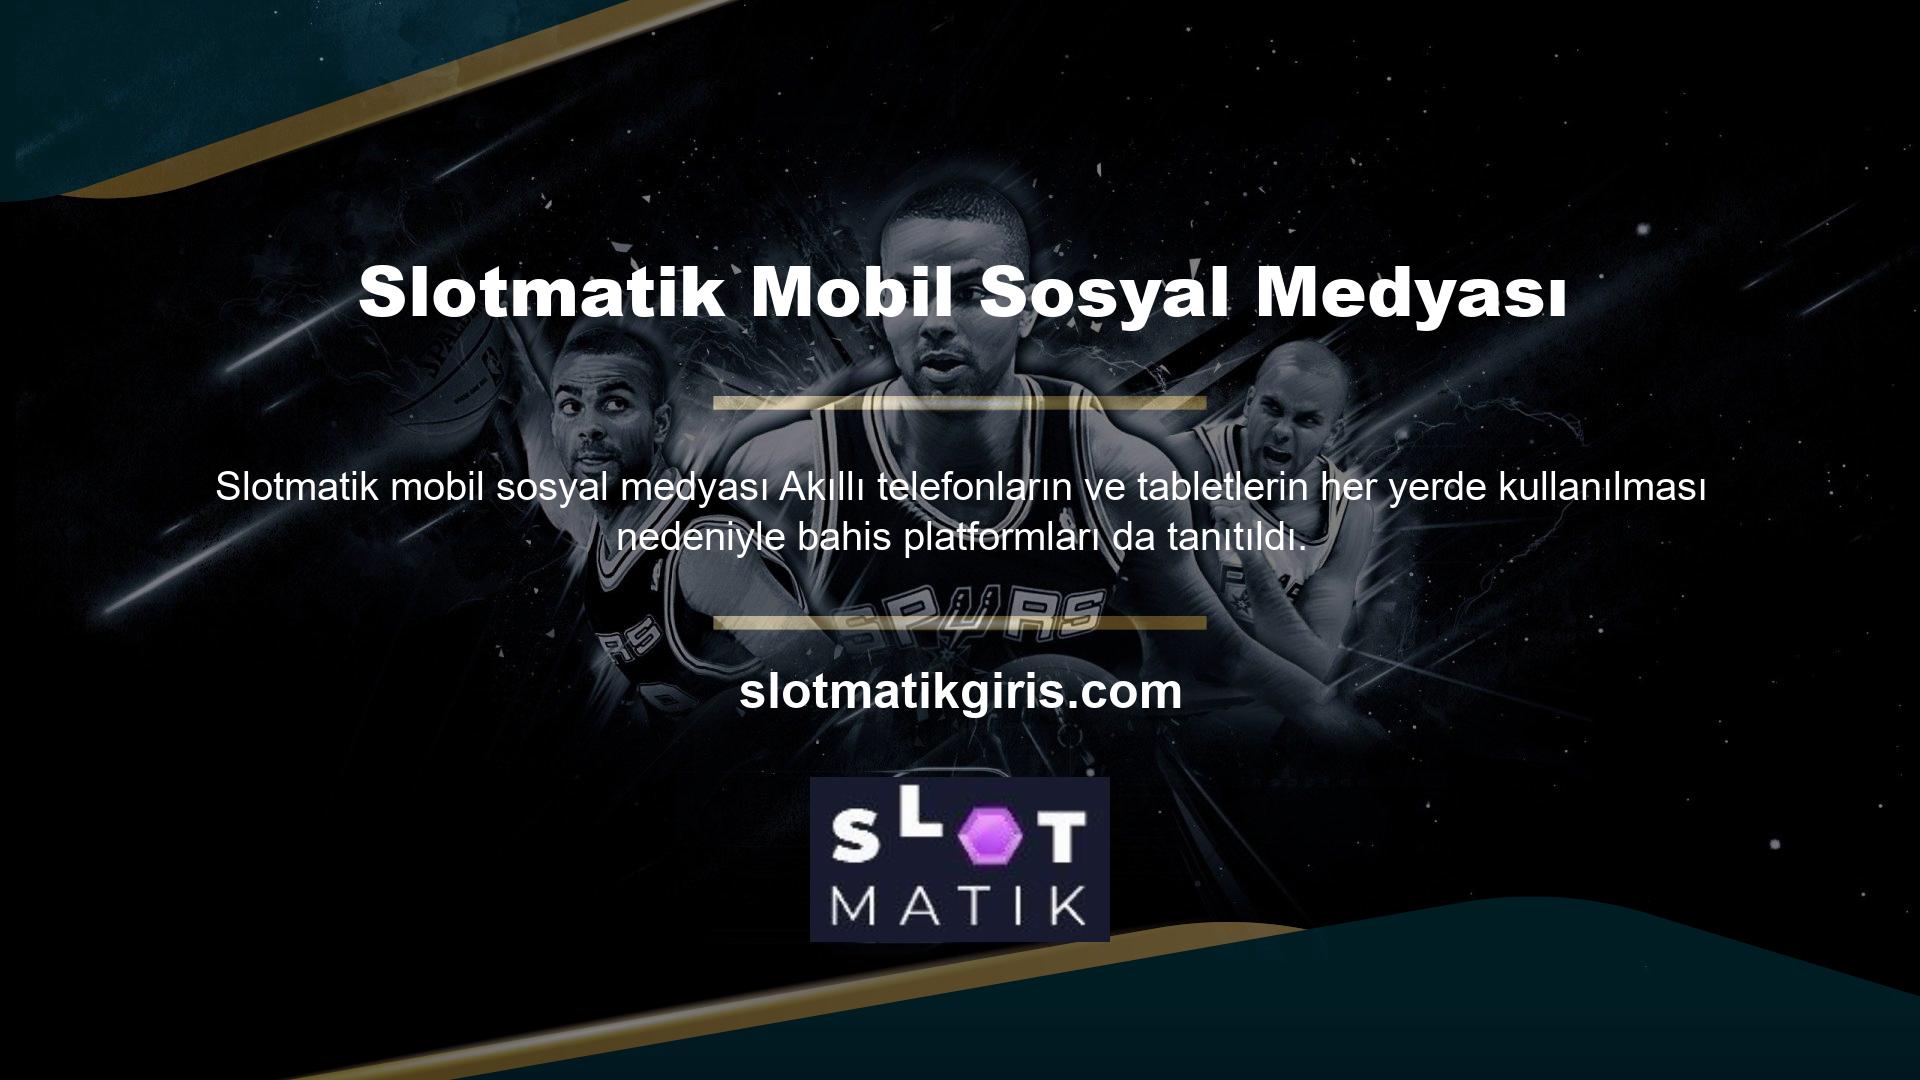 Slotmatik web sitesi, üyelerine mobil uygulama sunan ilk web sitelerinden biri olmuş ve Slotmatik mobil giriş uygulaması ile daha fazla kullanıcıya ulaşmıştır